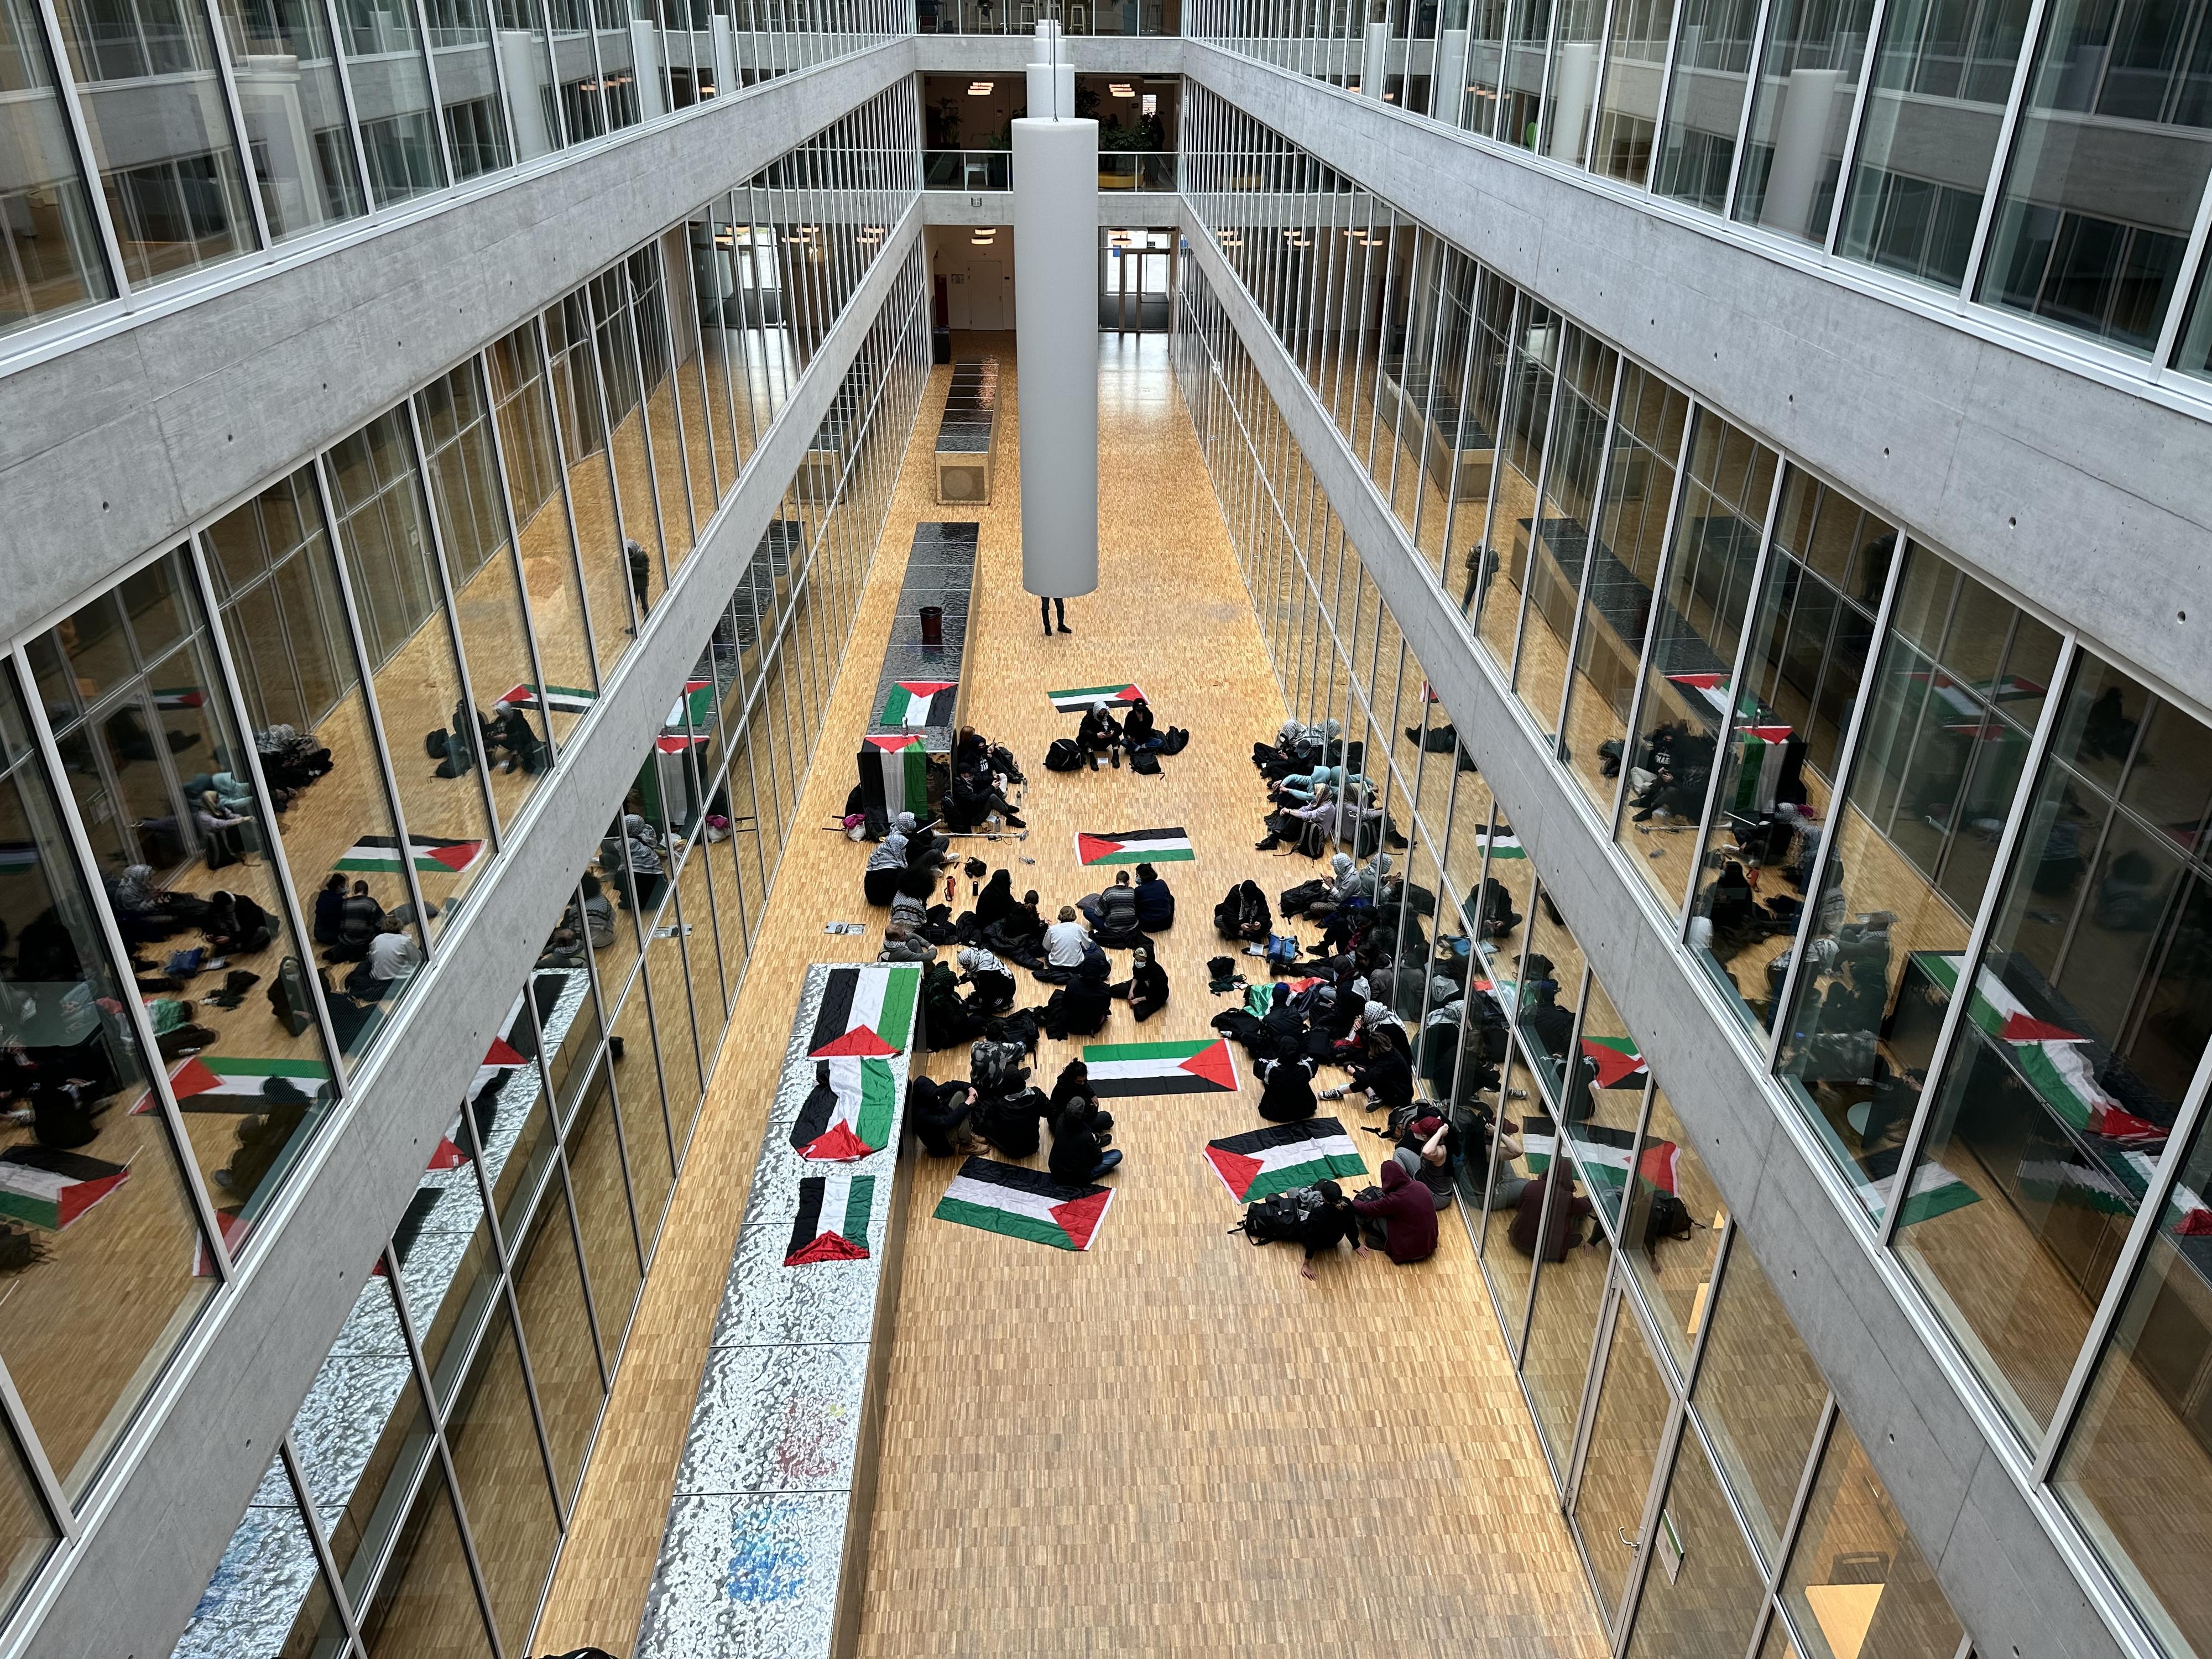 Des activistes pro-palestiniens occupent le hall d'un bâtiment de l'Université de Lausanne. [RTS - Robin Baudraz]